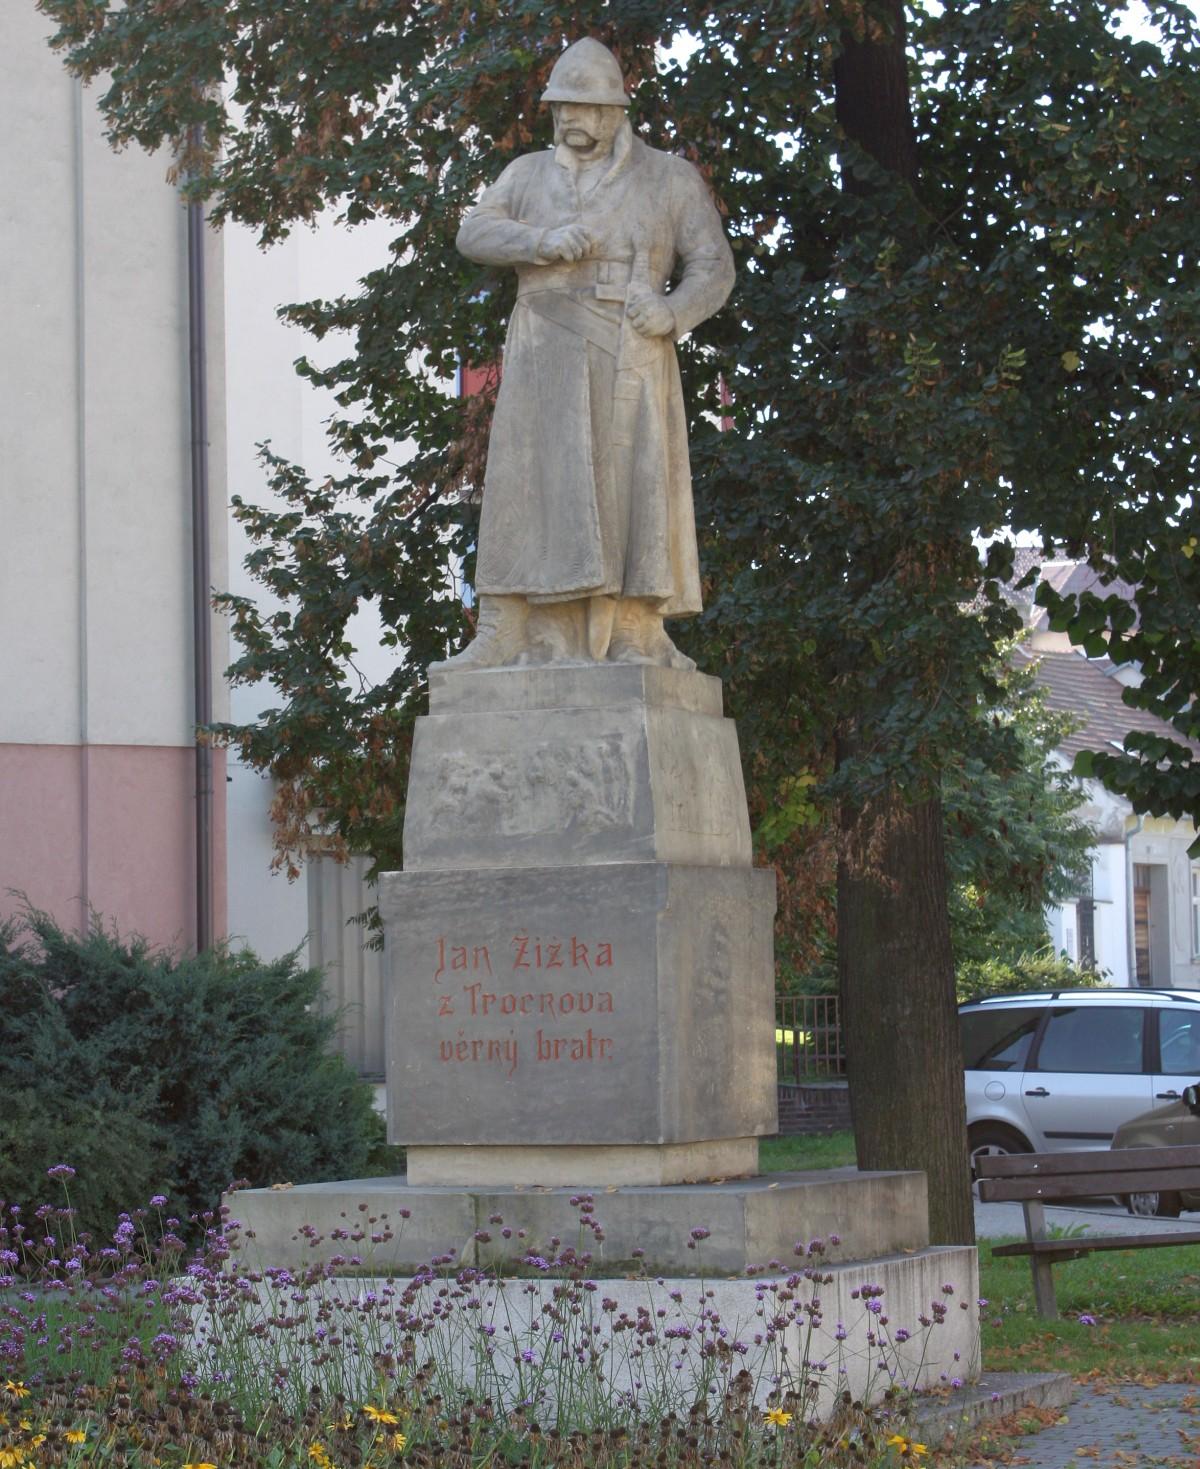 Obrázek - Statue of Jan Žižka